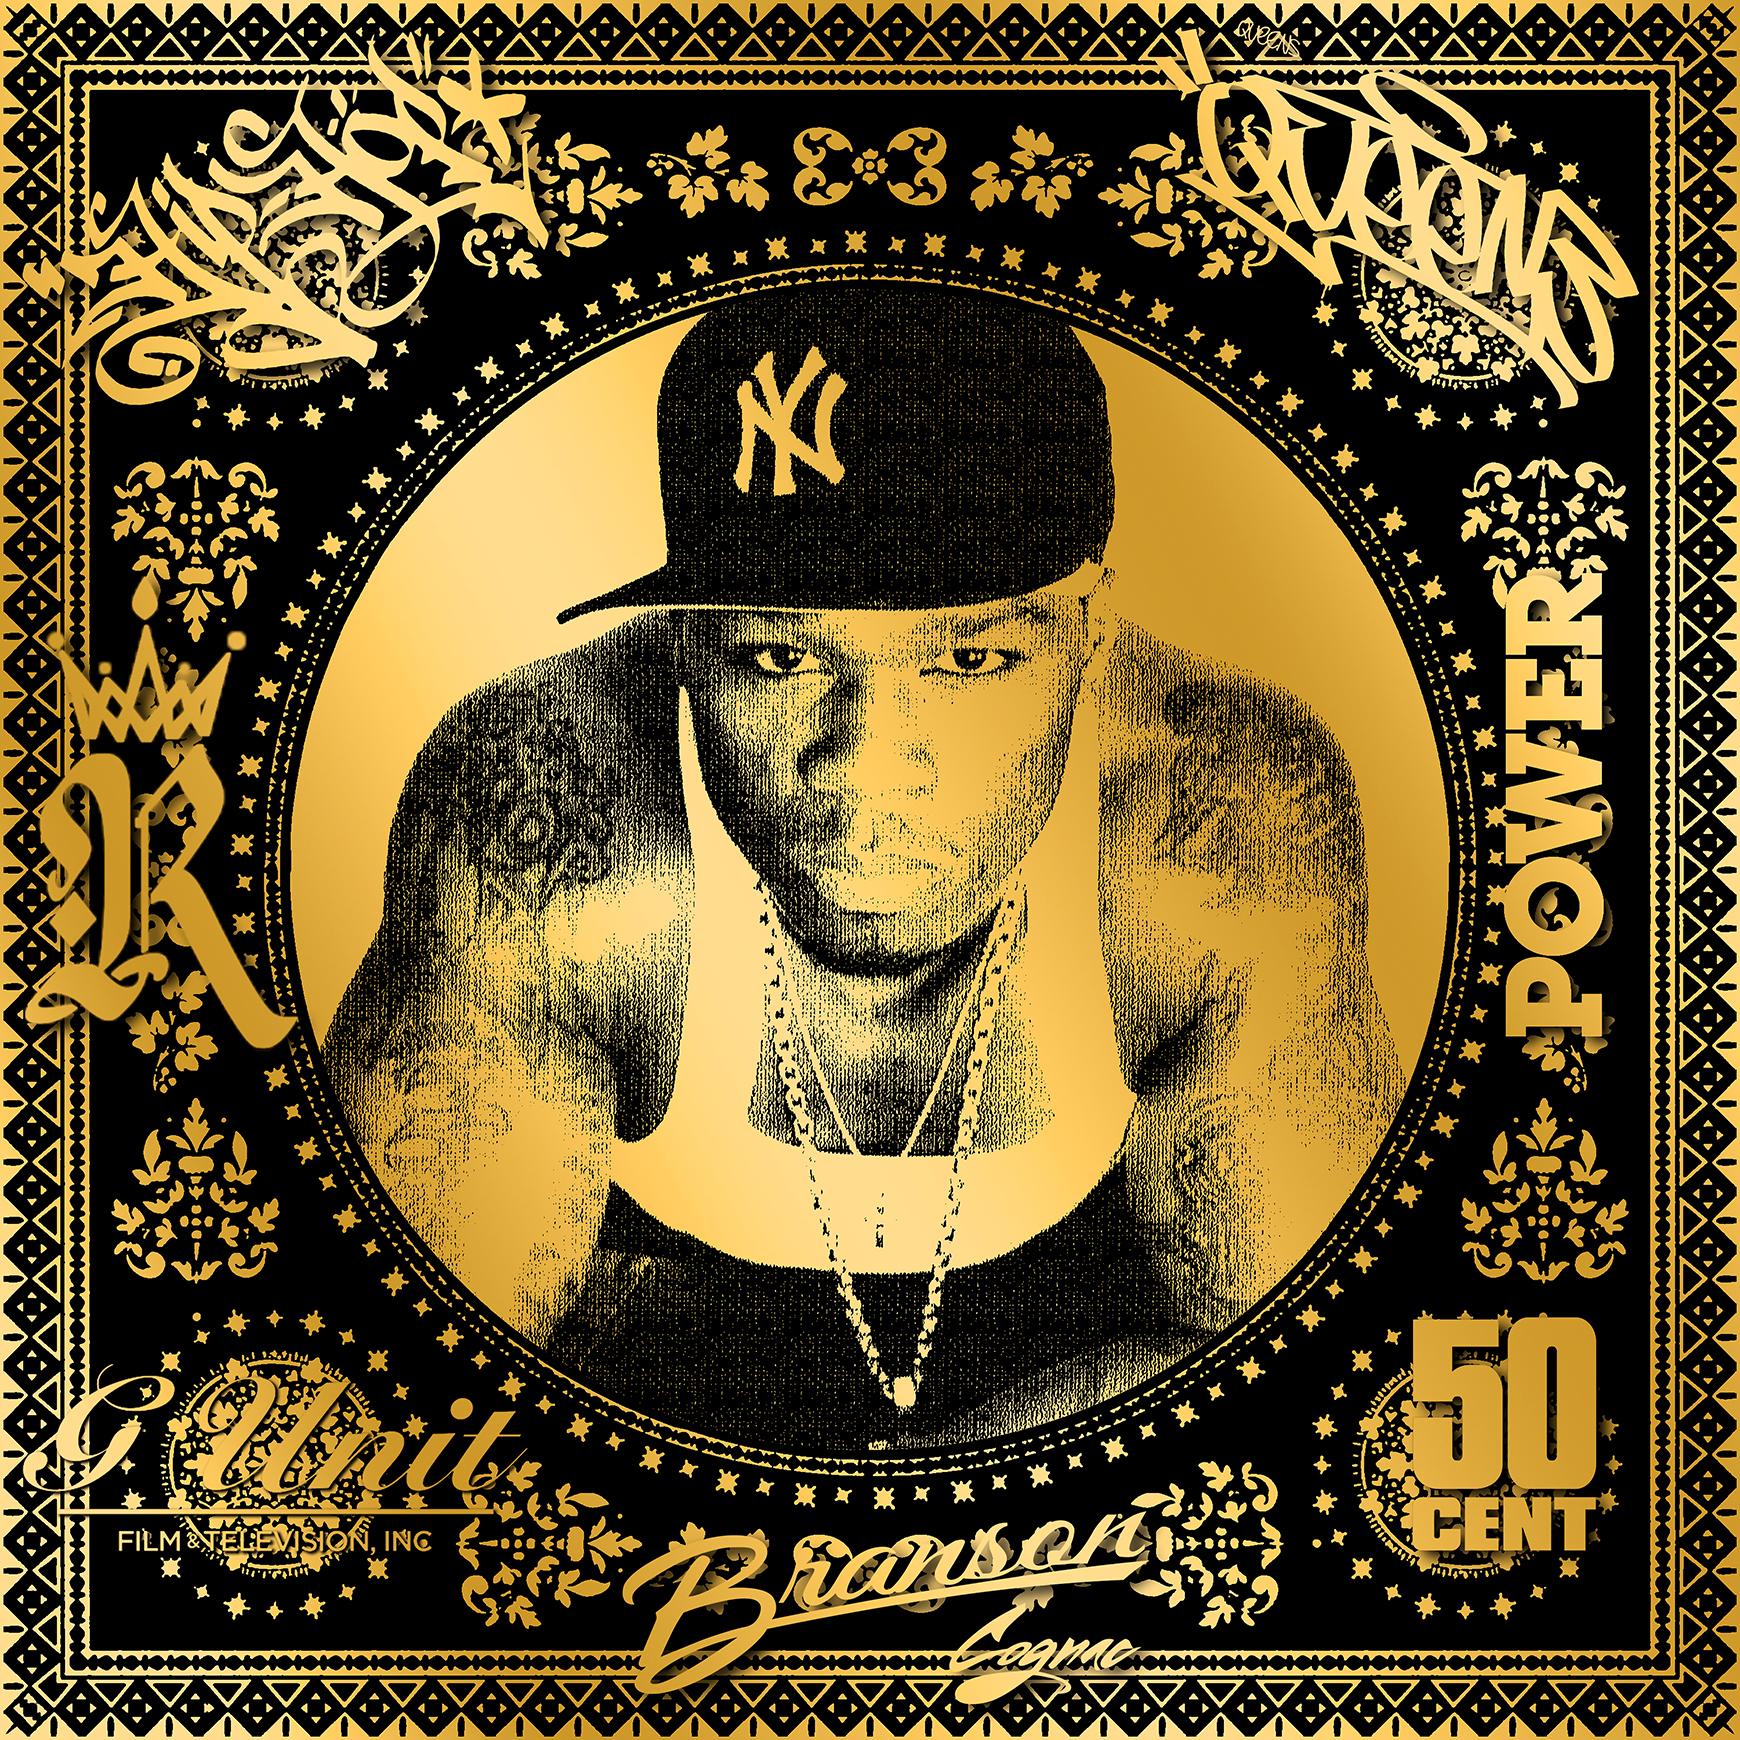 50 Cent (50 ans, Hip Hop, Rap, Iconic, Artiste, Musician, Rapper) - Print de Agent X